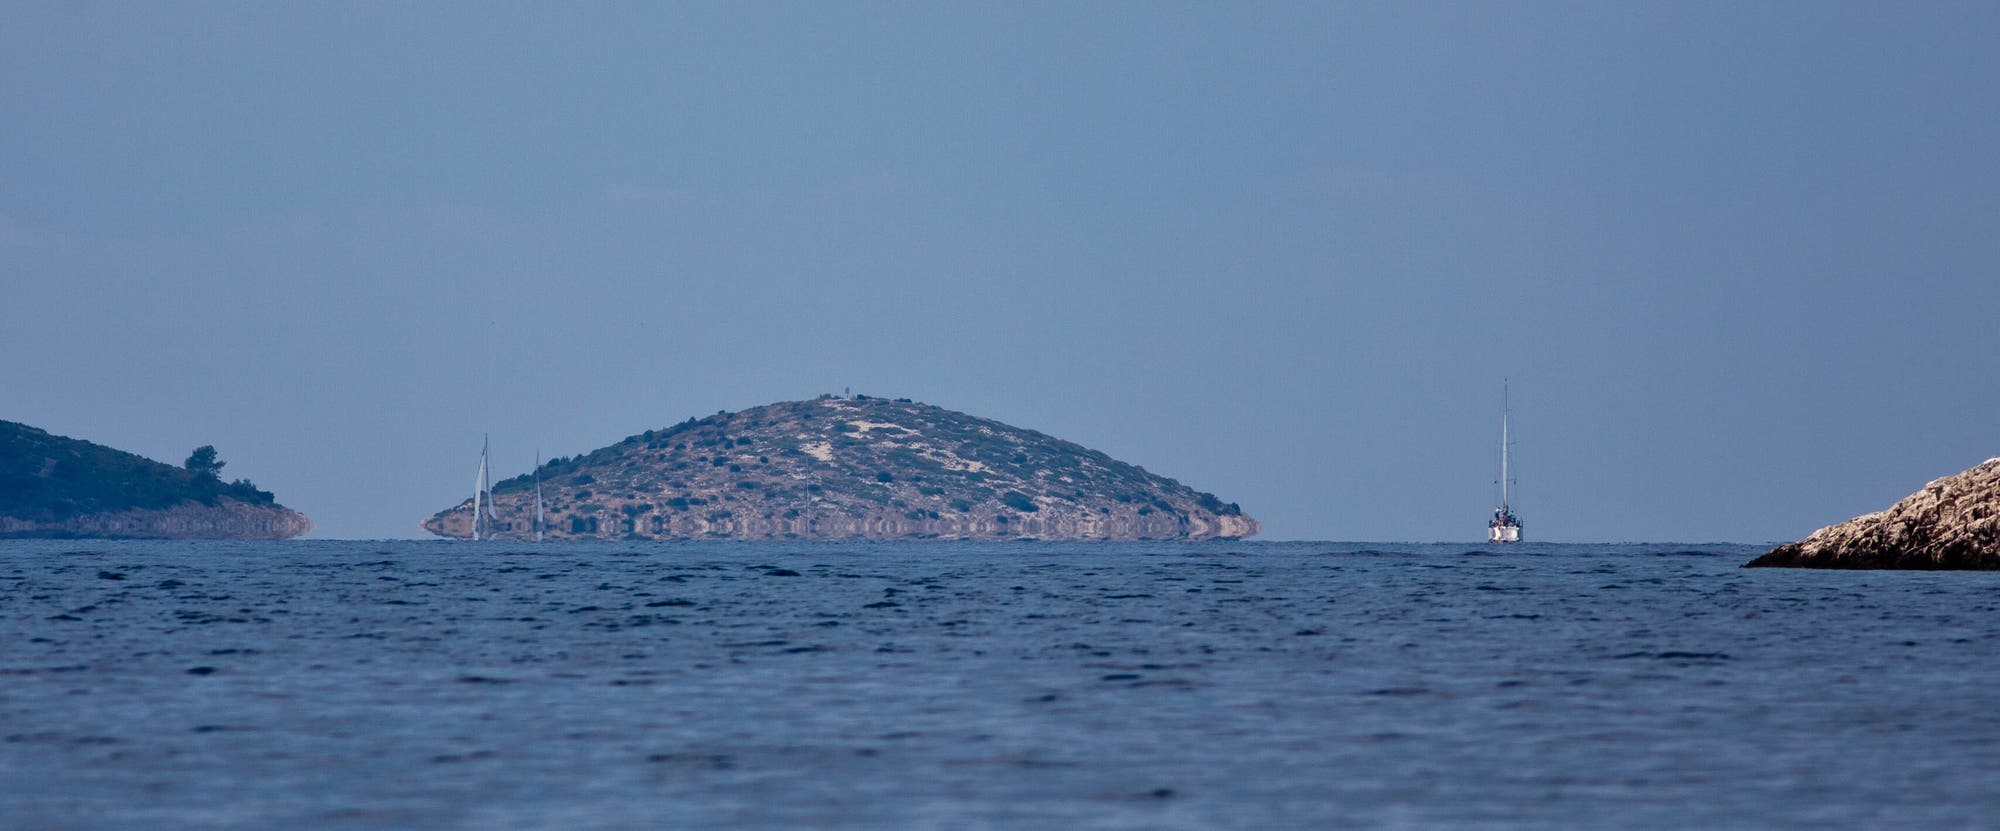 Luftspiegelungen bei der Insel Rava, Kroatien